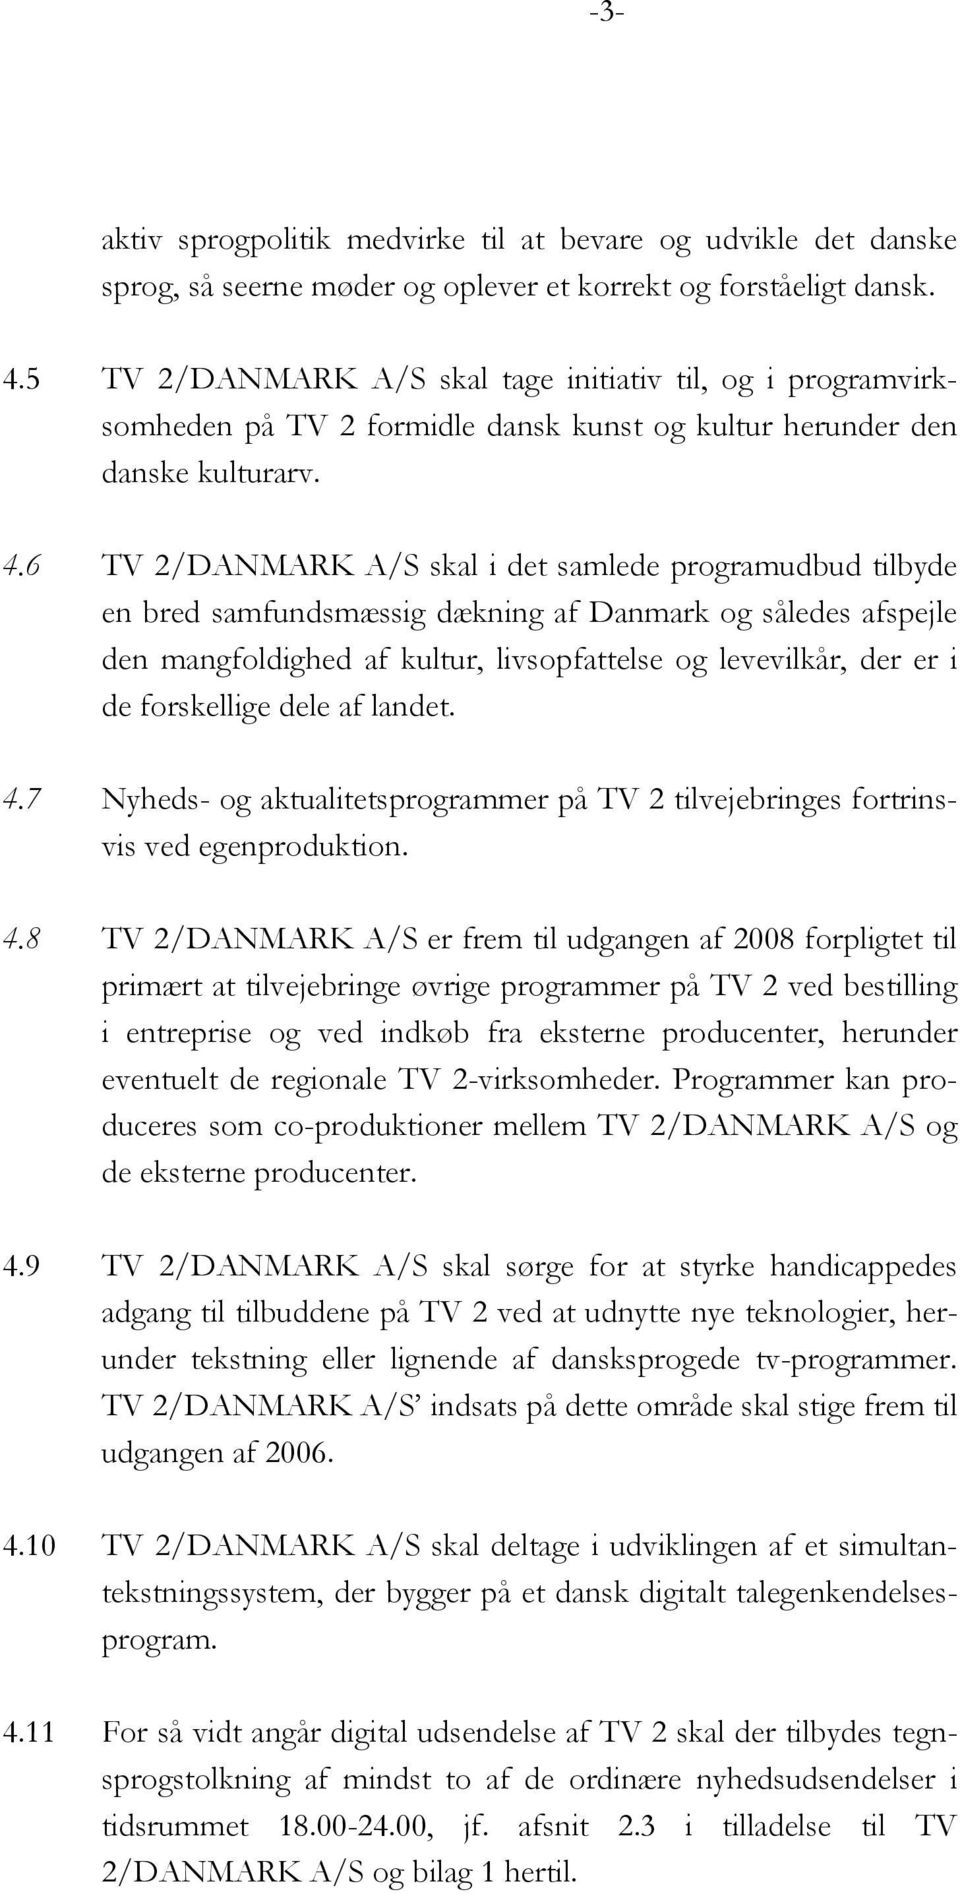 6 TV 2/DANMARK A/S skal i det samlede programudbud tilbyde en bred samfundsmæssig dækning af Danmark og således afspejle den mangfoldighed af kultur, livsopfattelse og levevilkår, der er i de